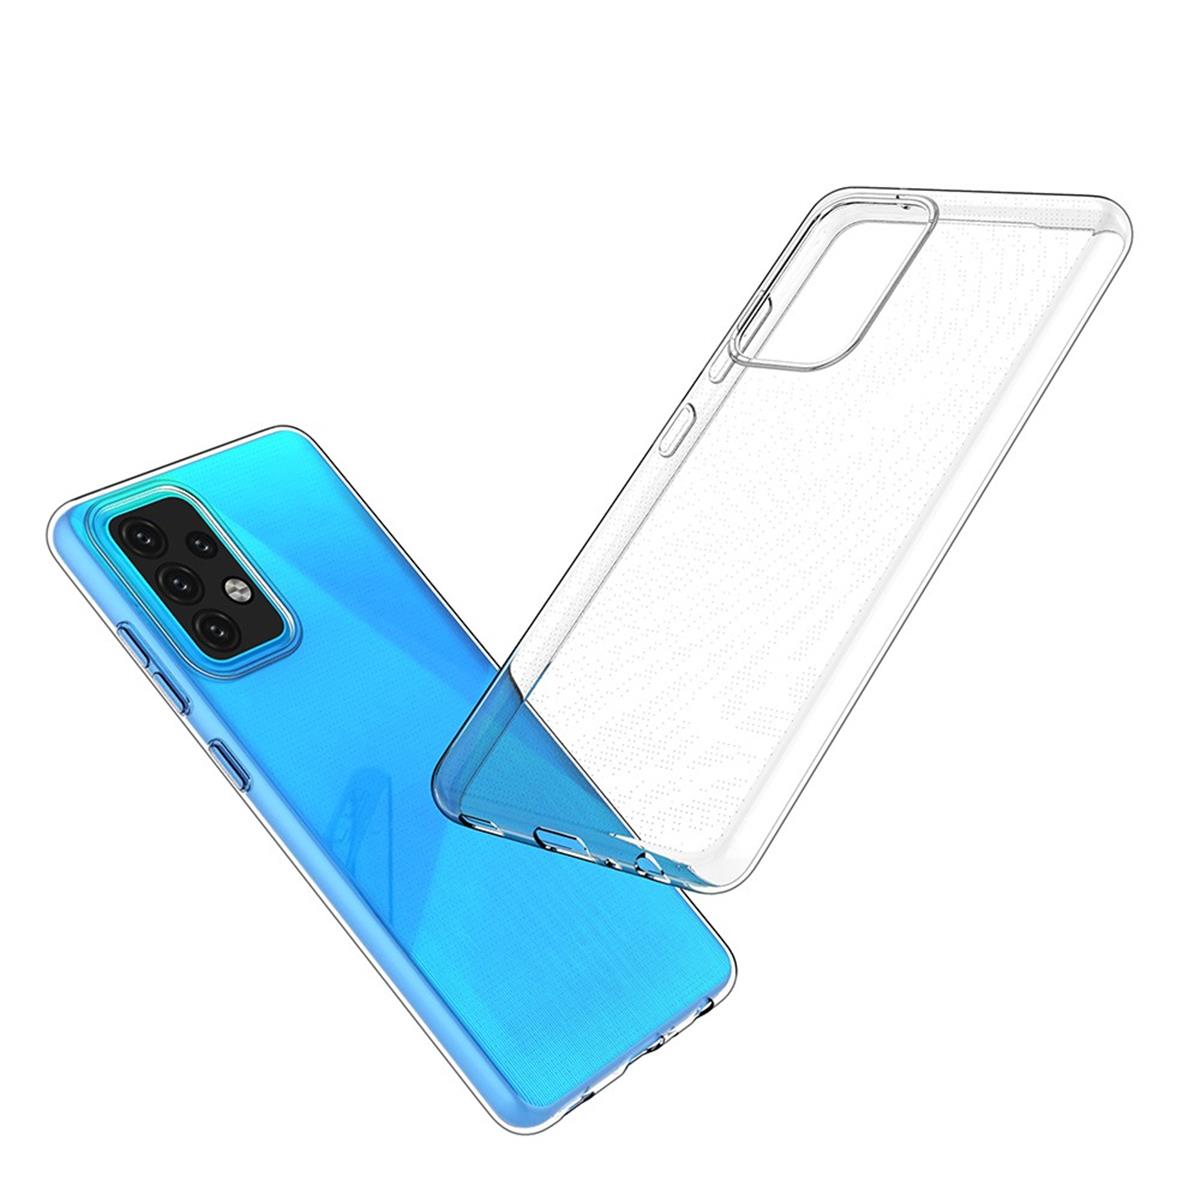 Hülle für Samsung Galaxy A52/A52 5G/A52s 5G Handyhülle Silikon Cover Case klar